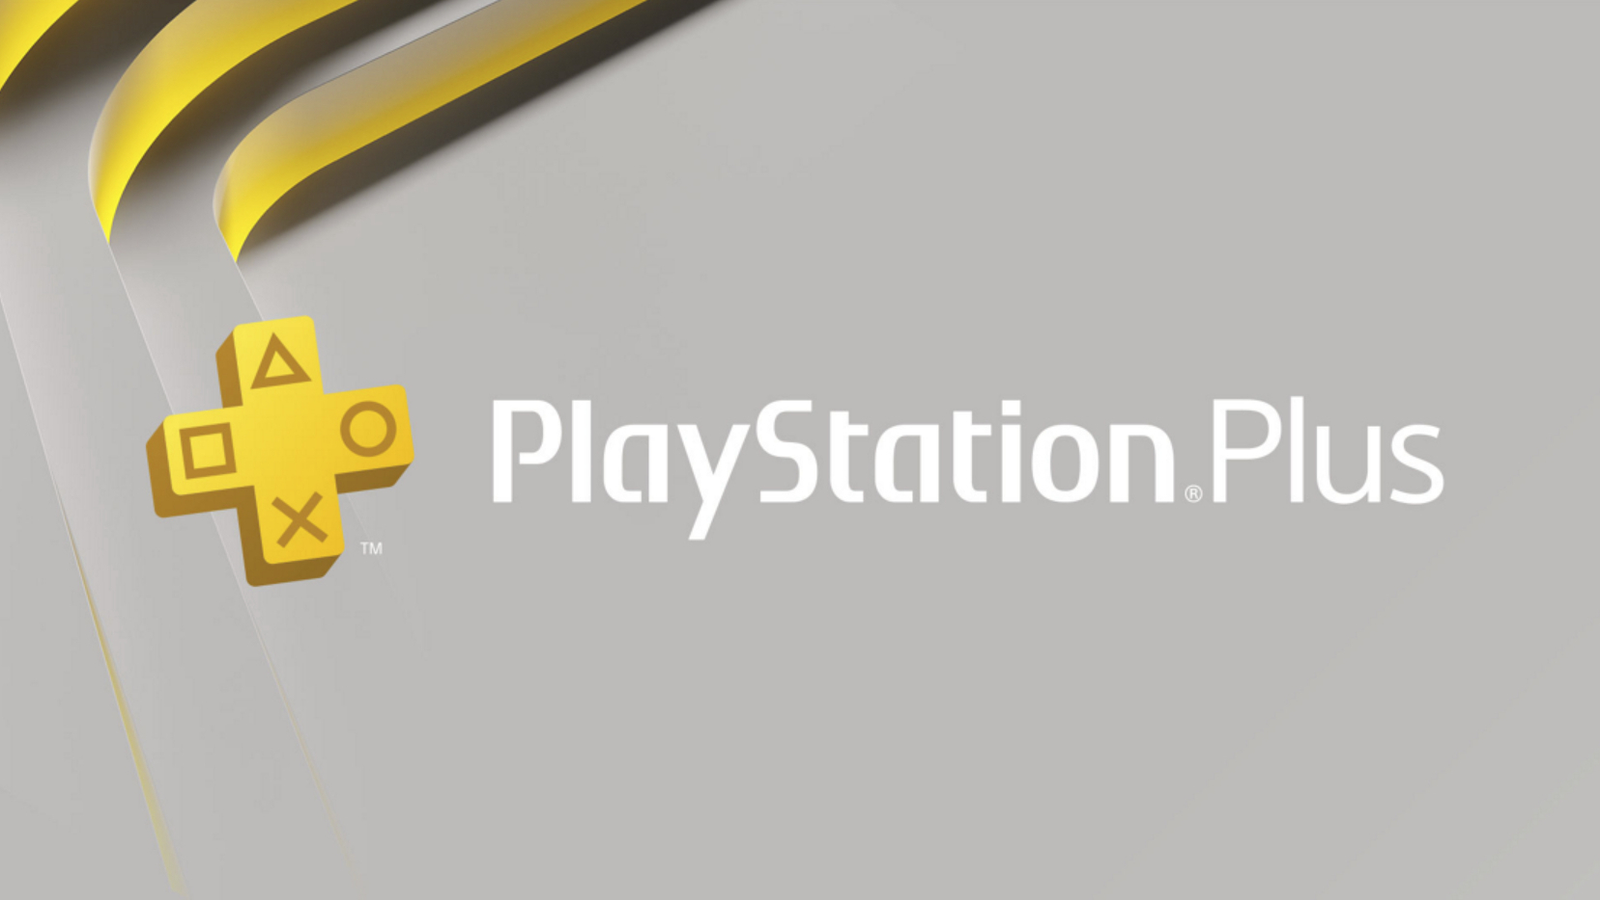 Compra Suscripción mensual de PlayStation Plus 3 en Ucompra Guatemala